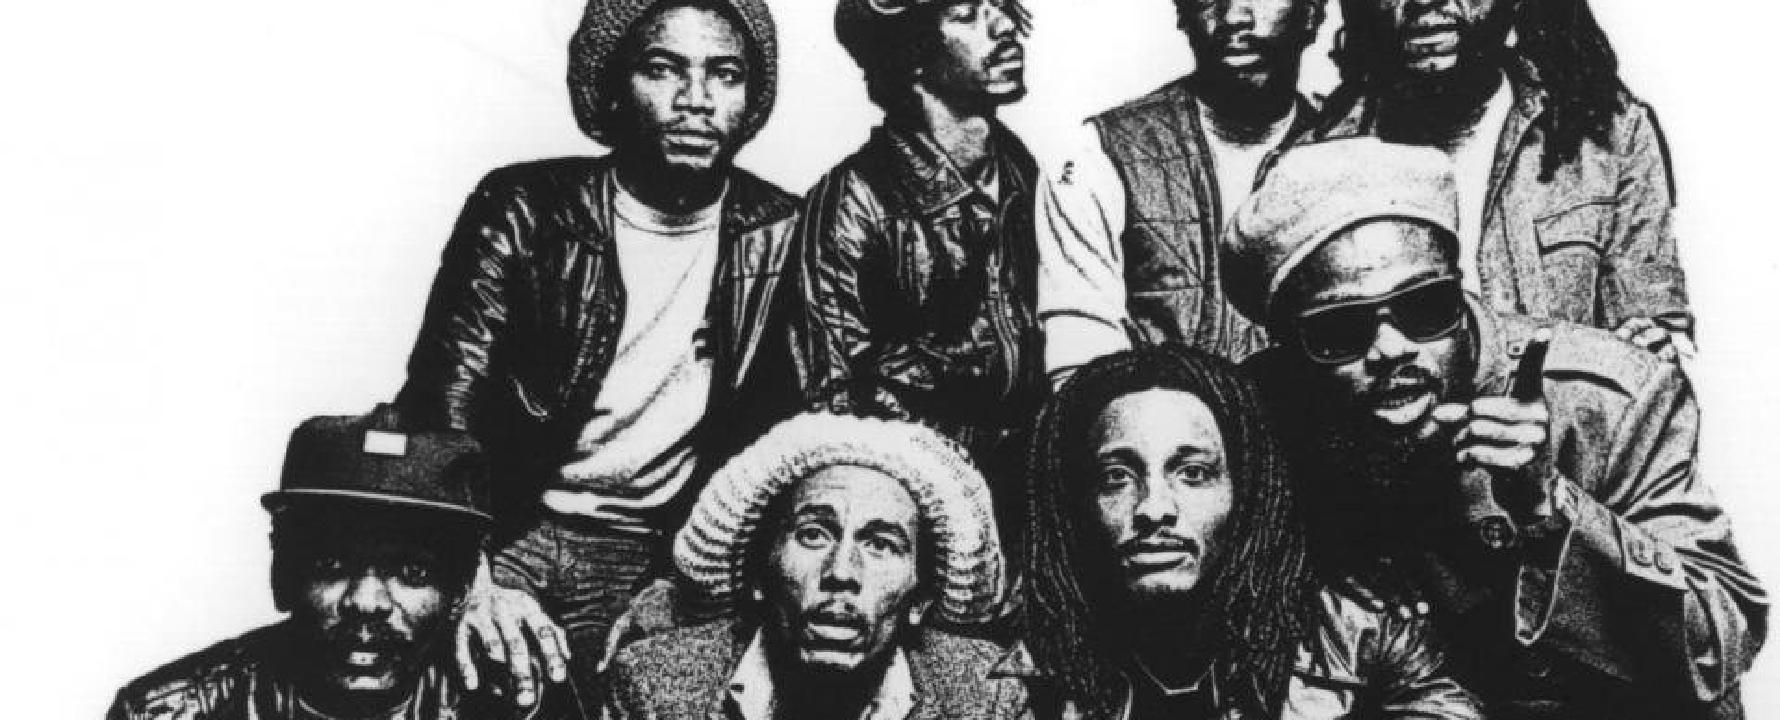 Fotografía promocional de Bob Marley & The Wailers